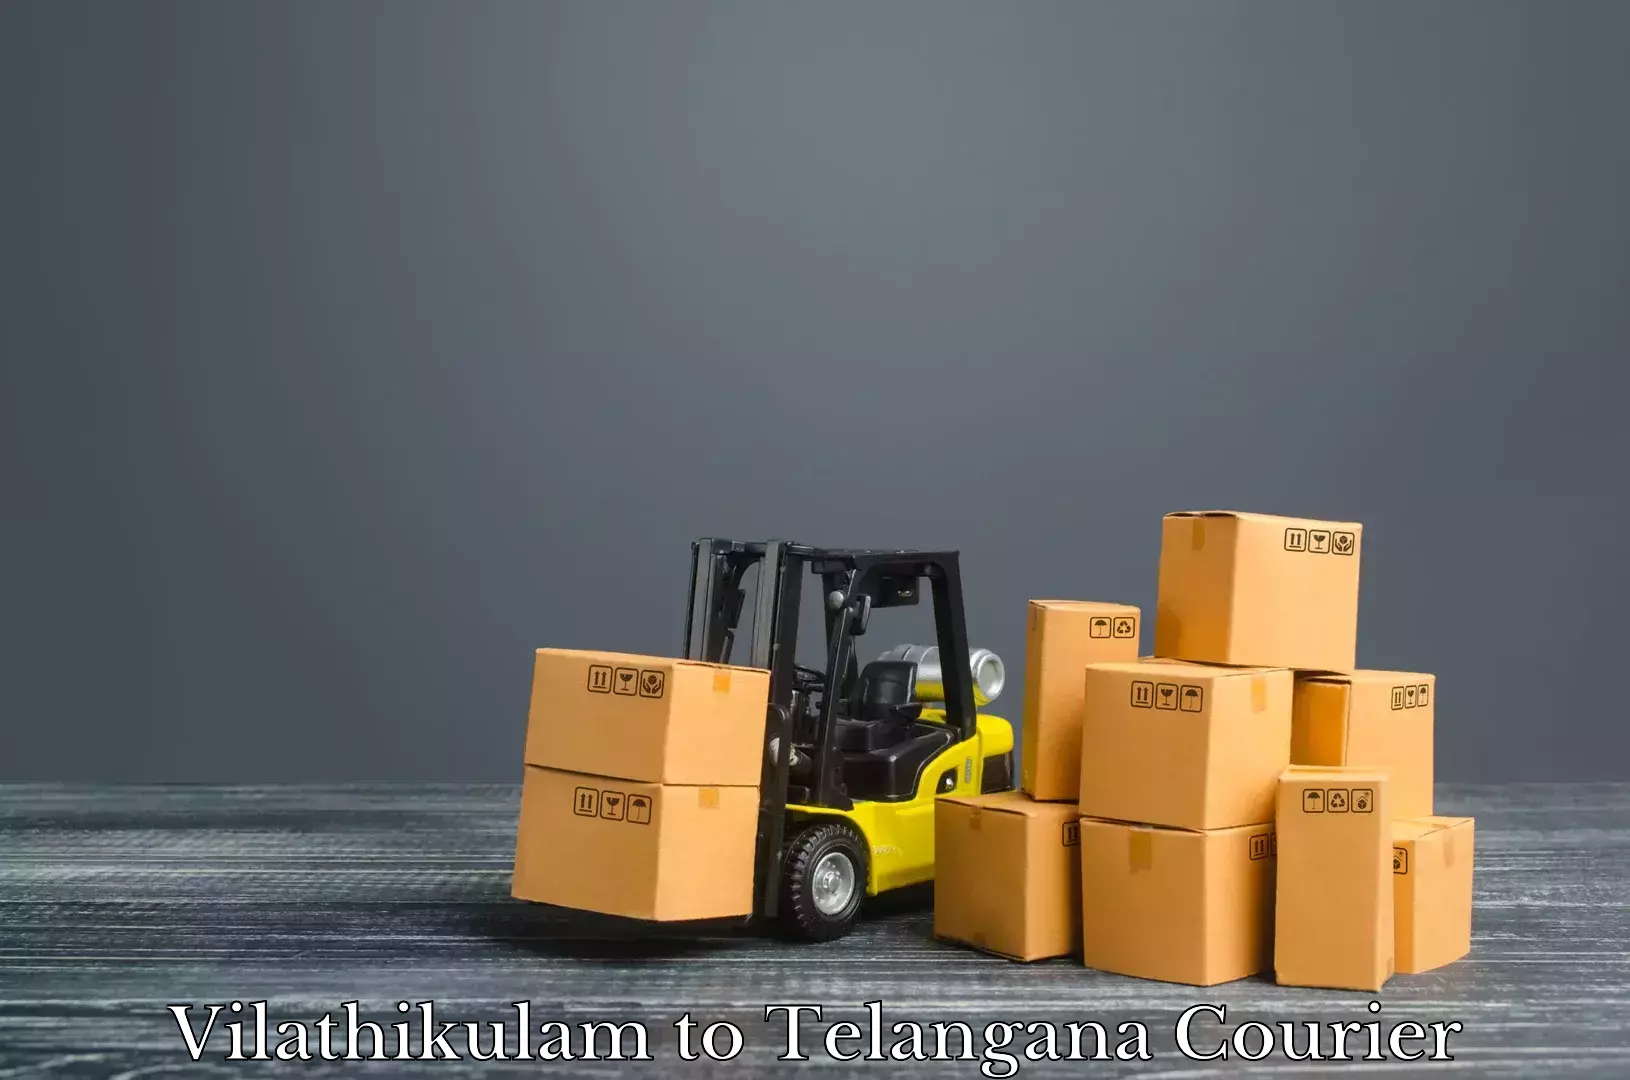 Luggage delivery system Vilathikulam to Kothagudem